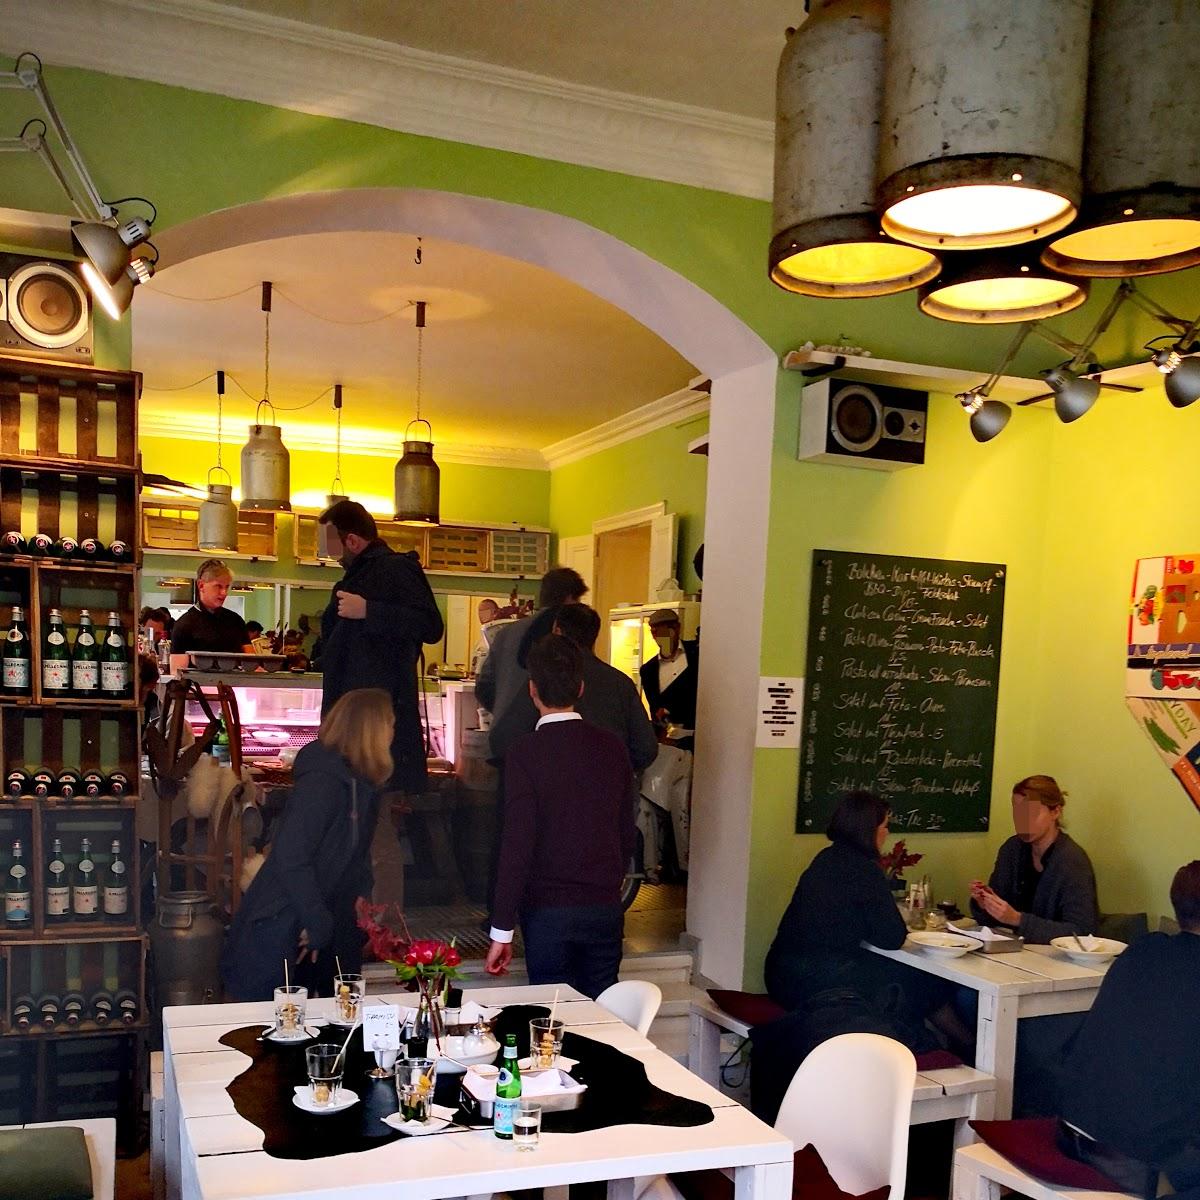 Restaurant "Eins Essen und Trinken" in Berlin